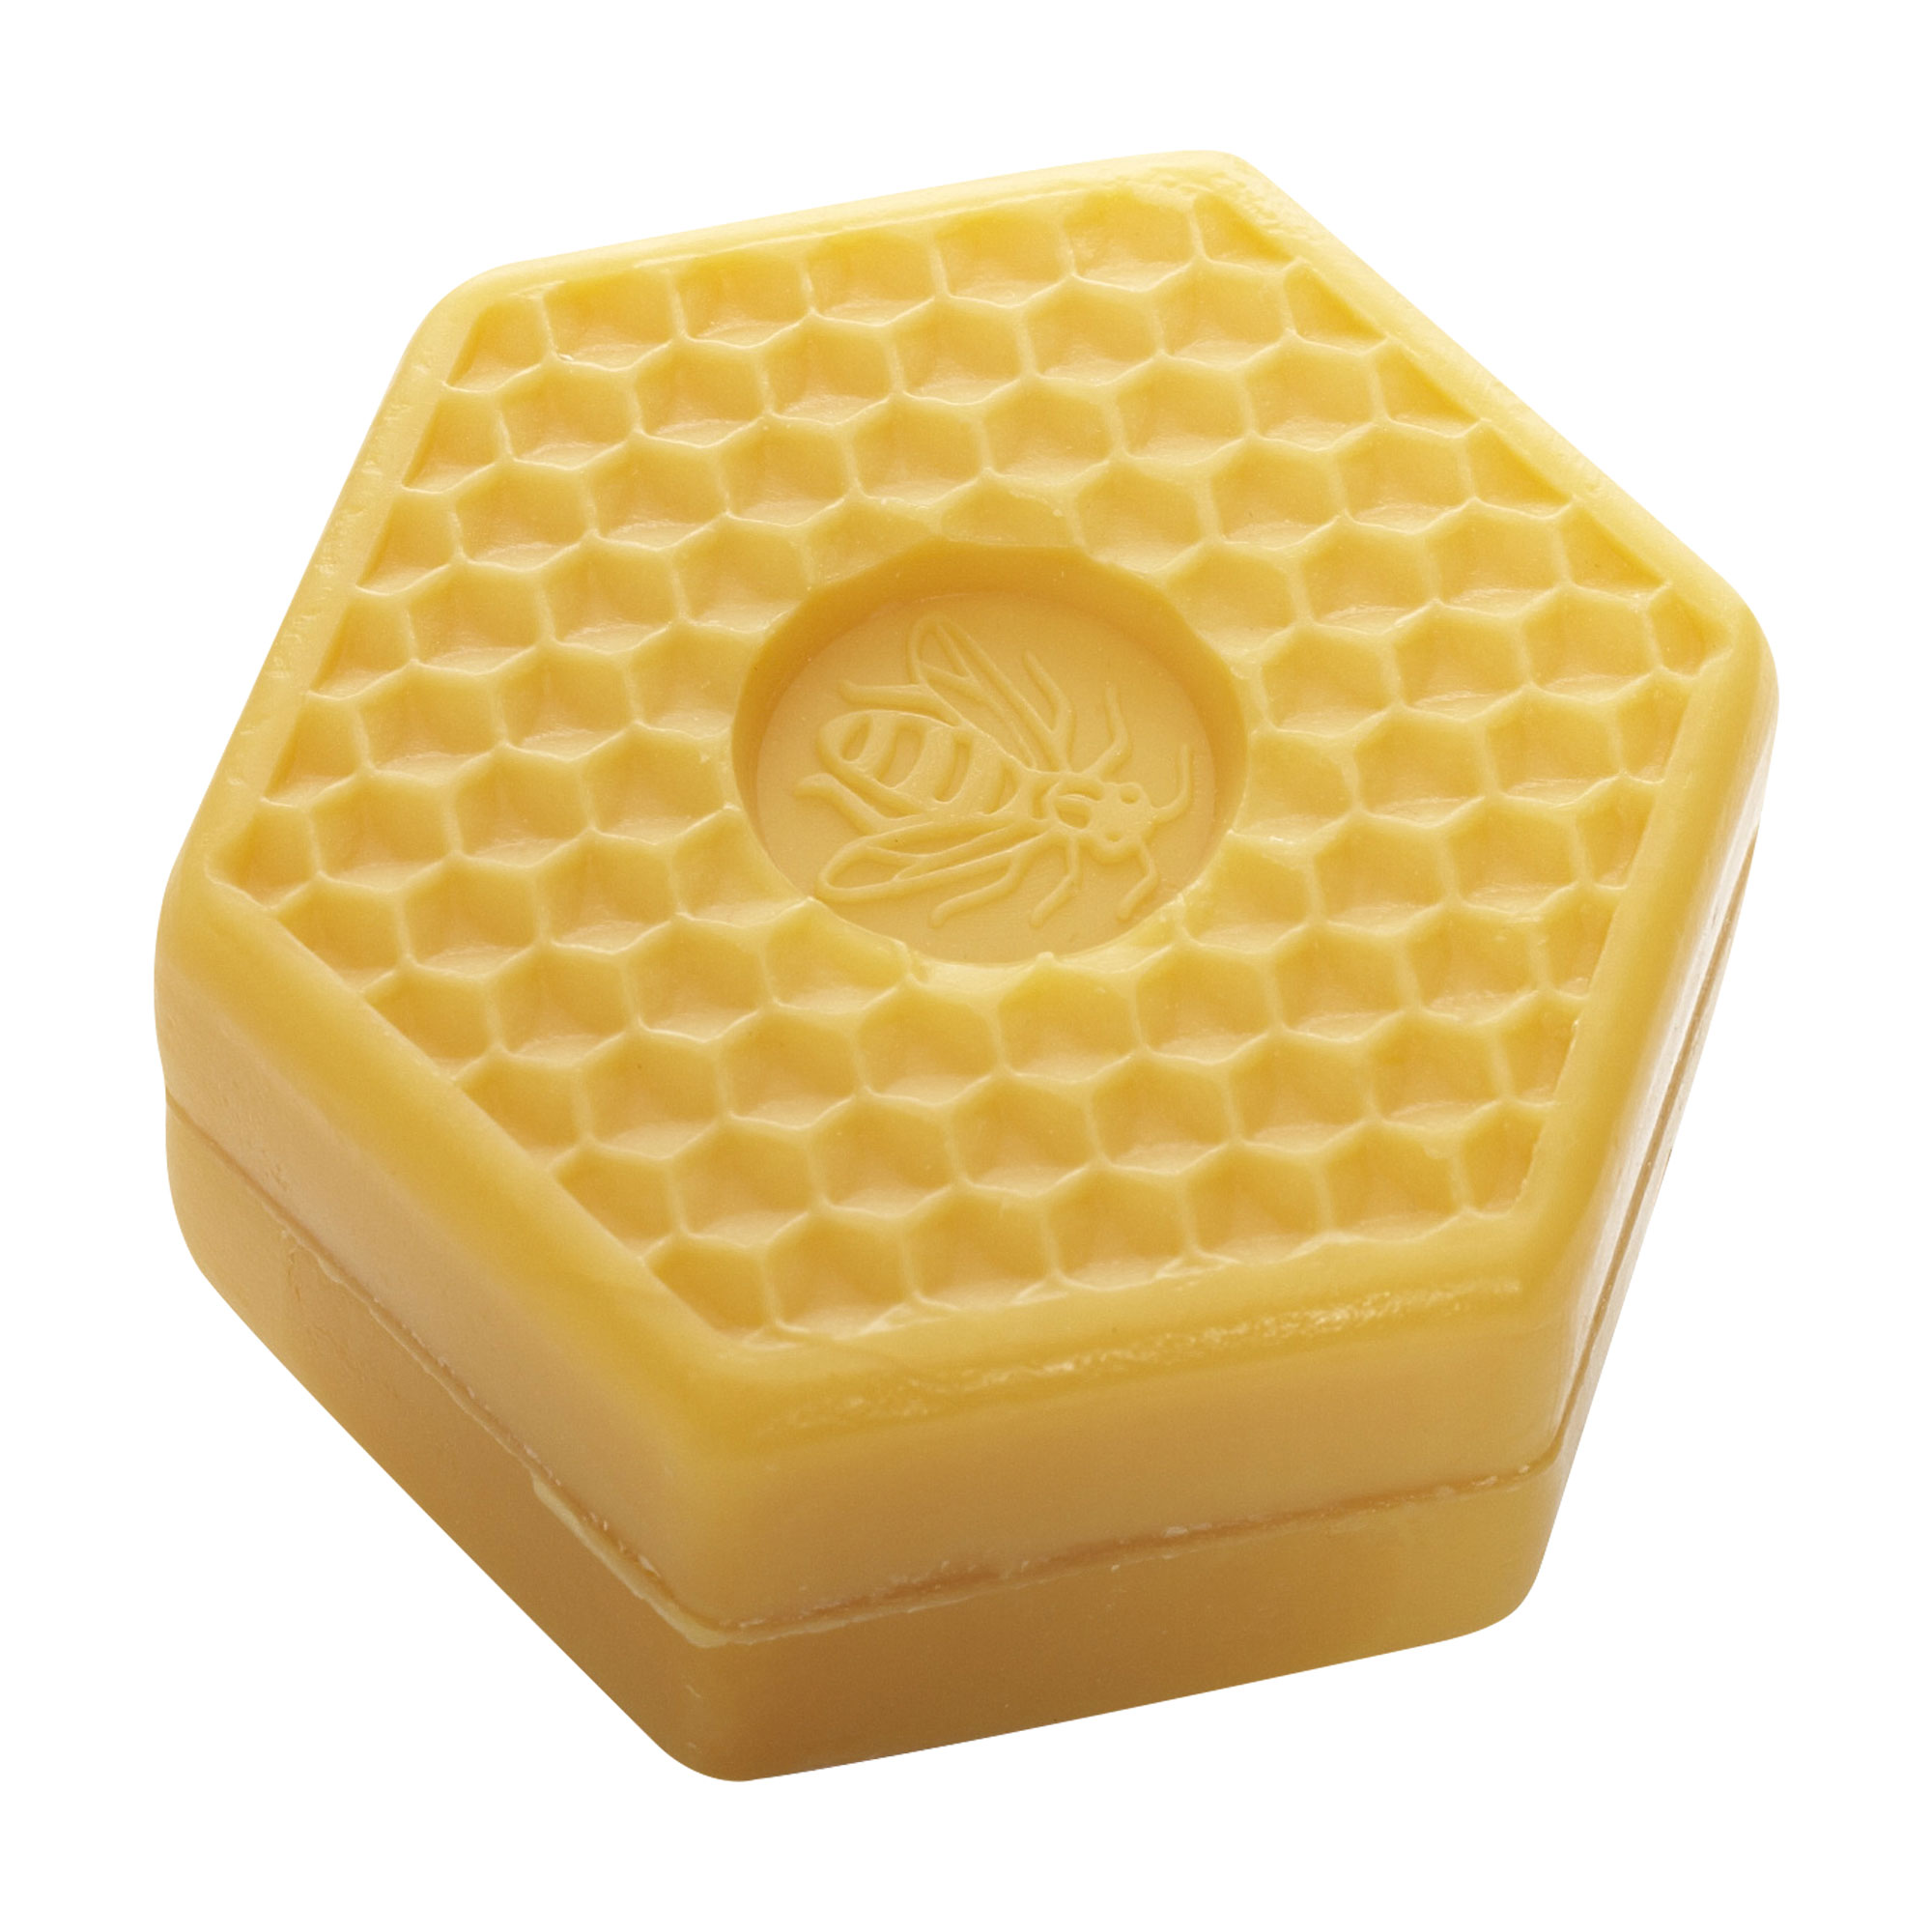 Milde und ergiebige Seife mit echtem Bio-Bienhonig und Bienenwachs.